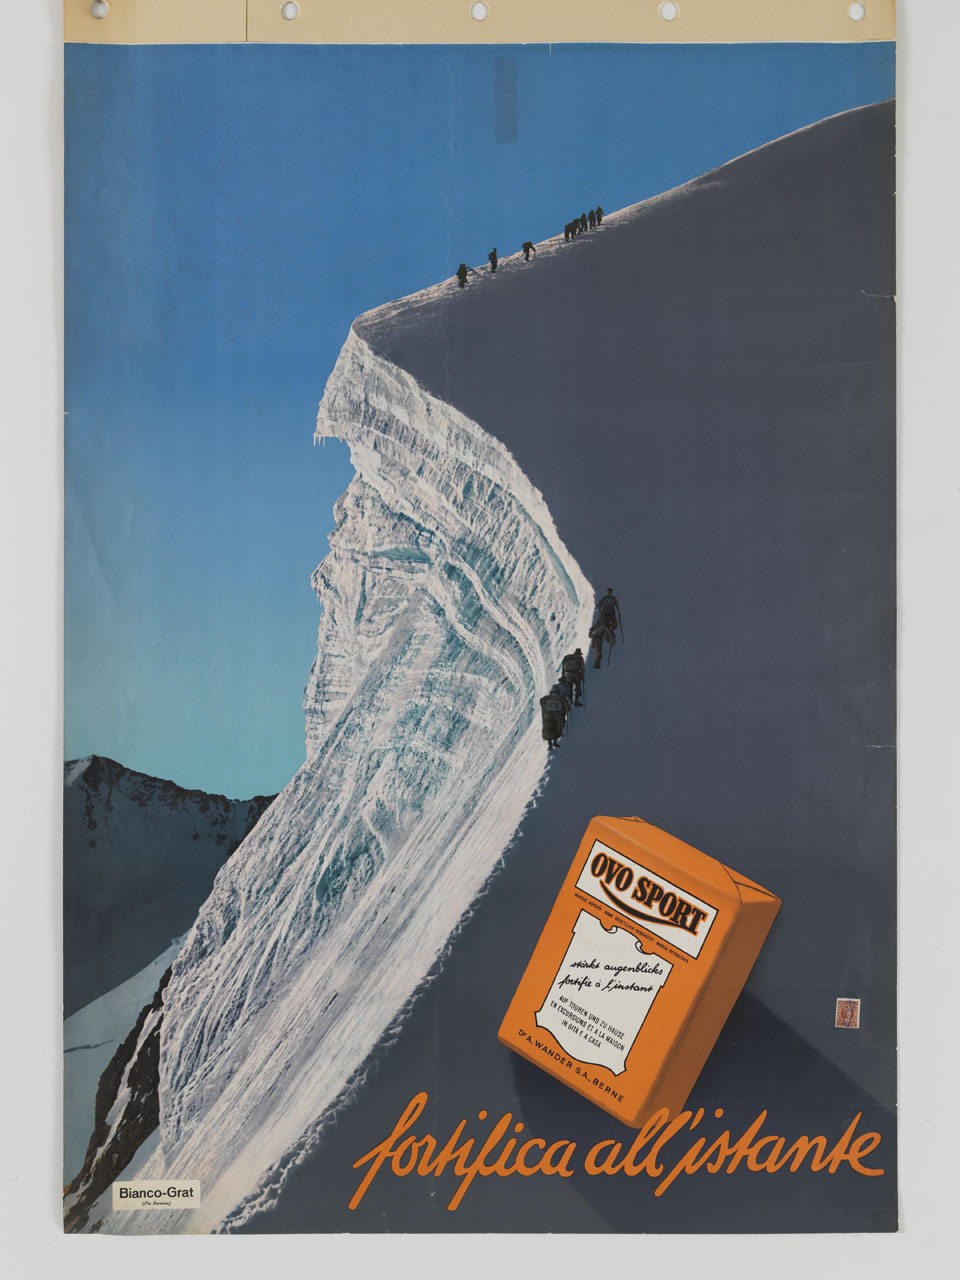 confezione di Ovo Sport si staglia contro la cresta del Bianco Grat risalita da una cordata di alpinisti (manifesto) - ambito svizzero (sec. XX)